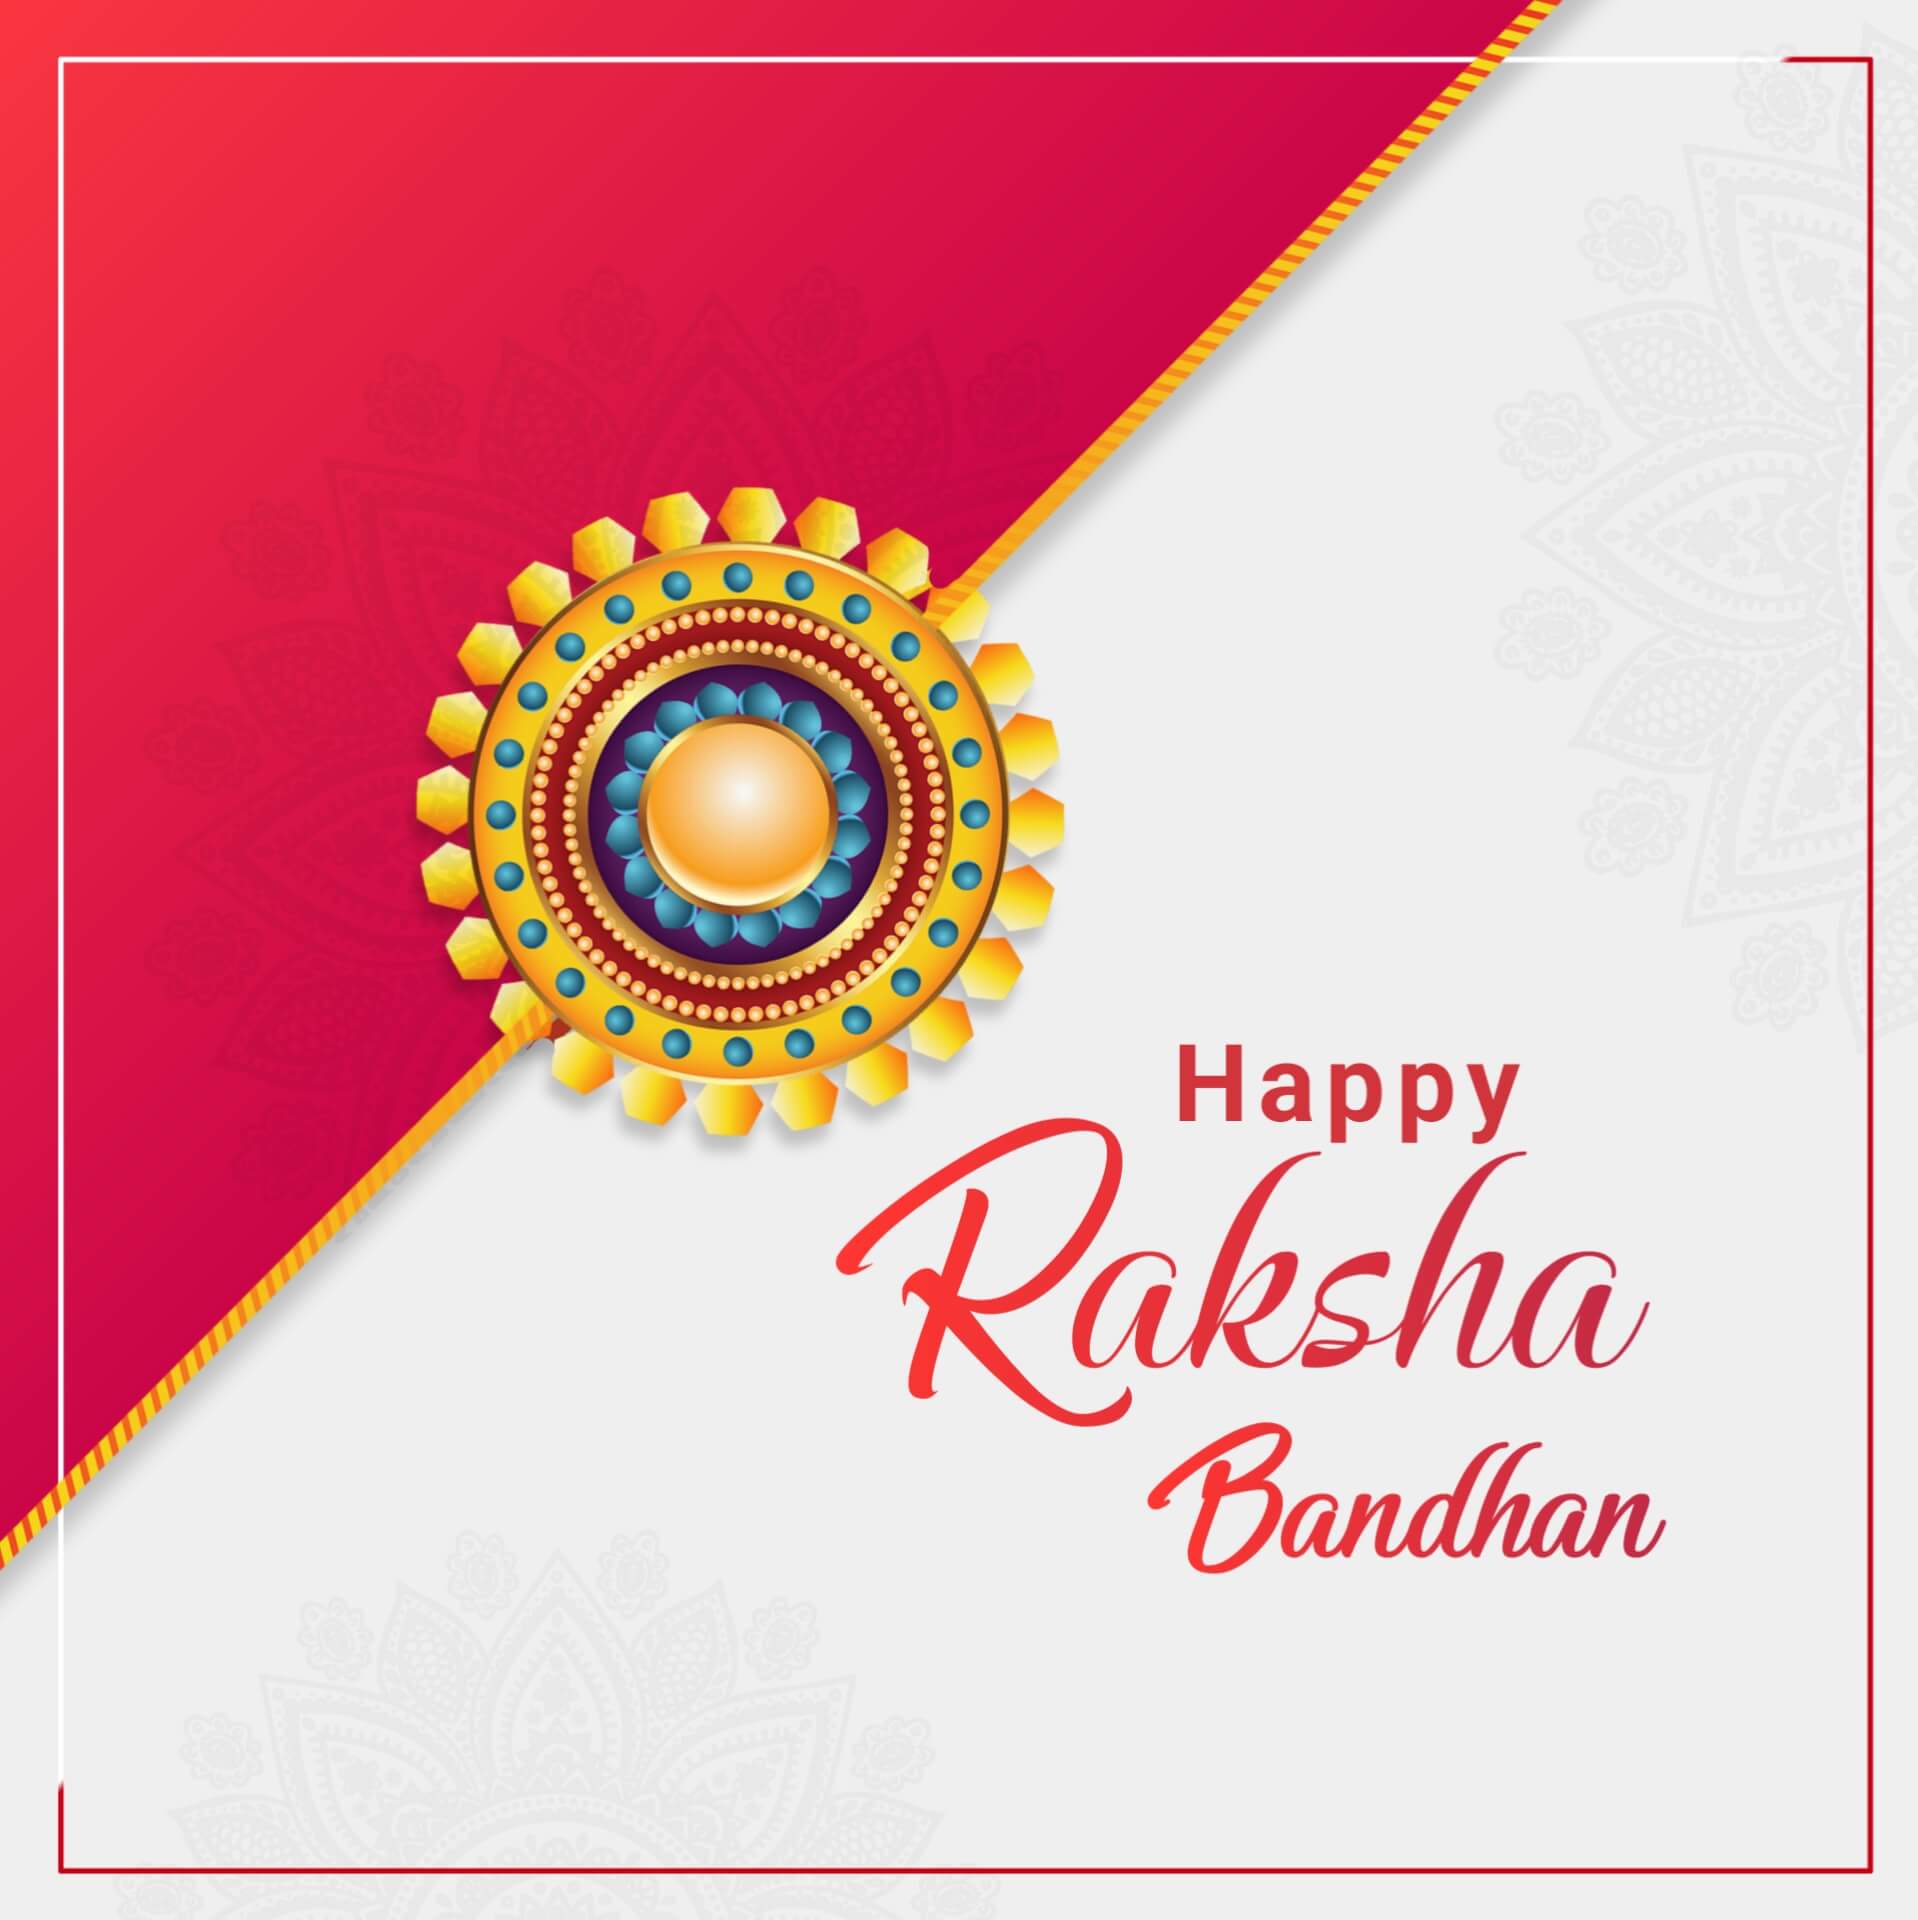 Free Raksha Bandhan Image Download 